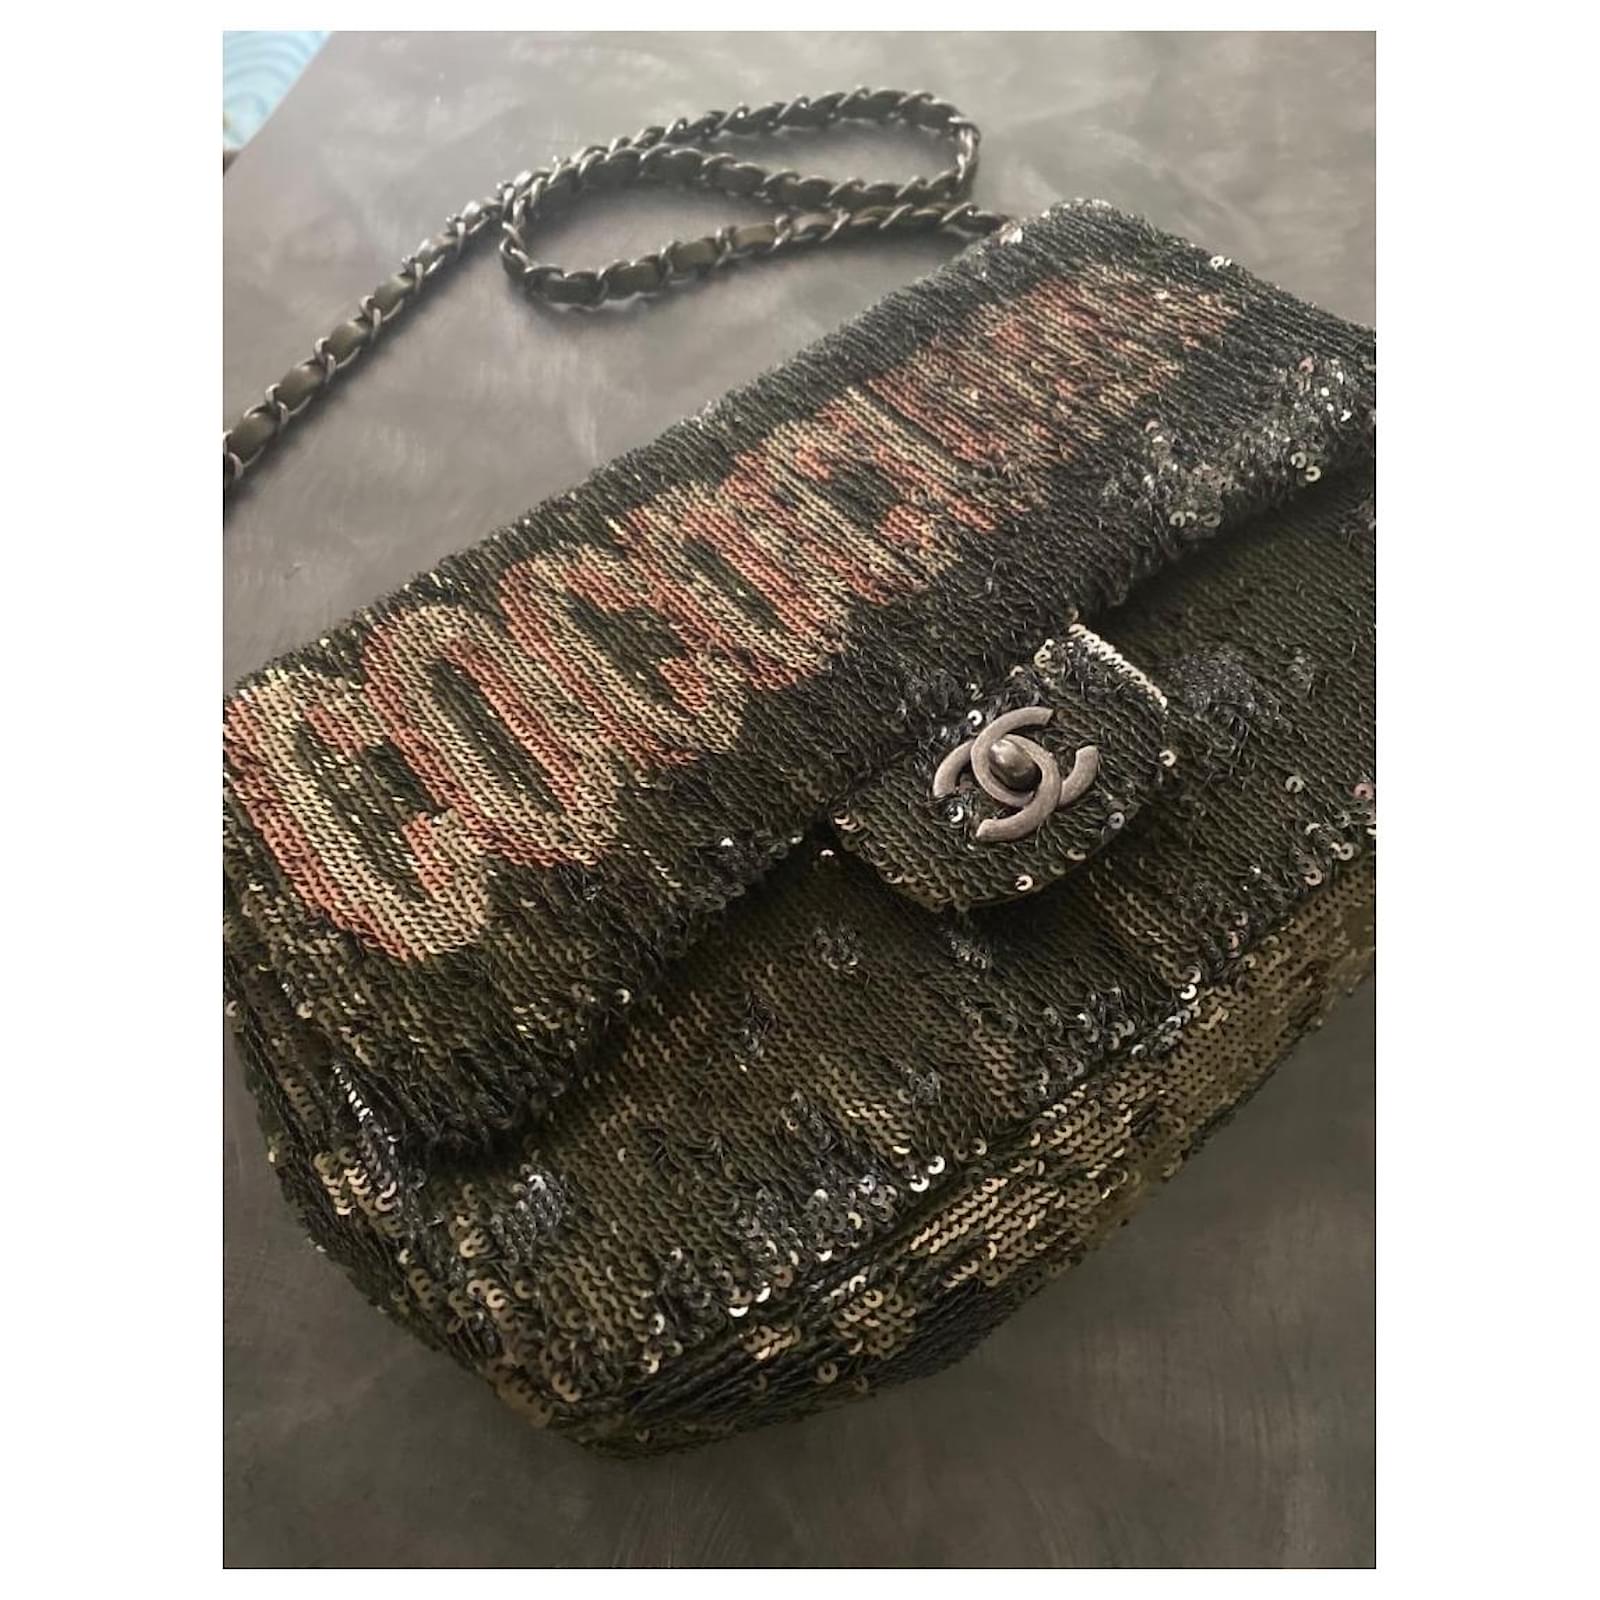 Chanel flap bag sequin coco cuba